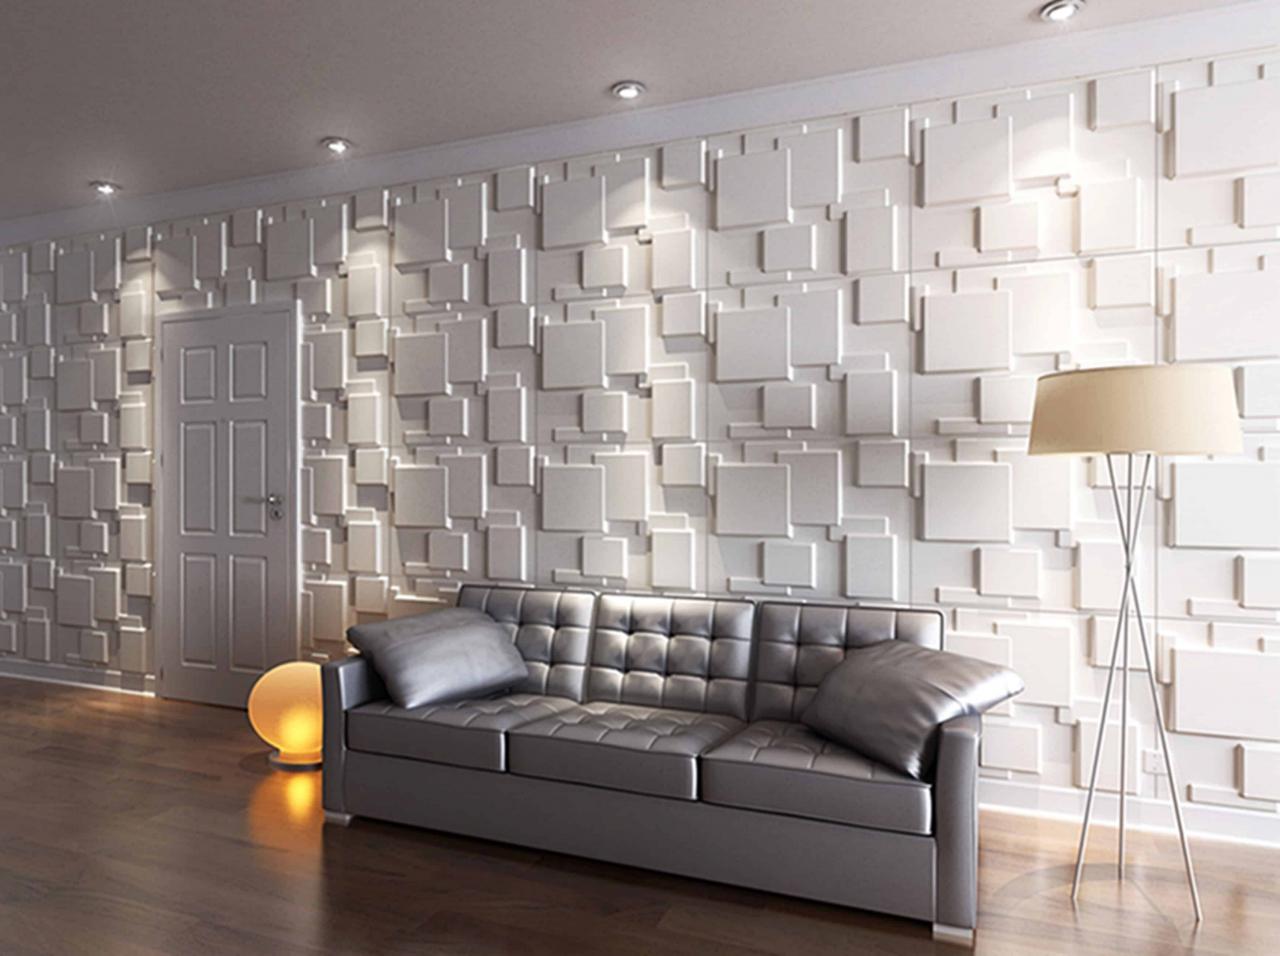 ورق جدران ثلاثي الابعاد , ديكورات وتصميمات لورق الجدران تحفه